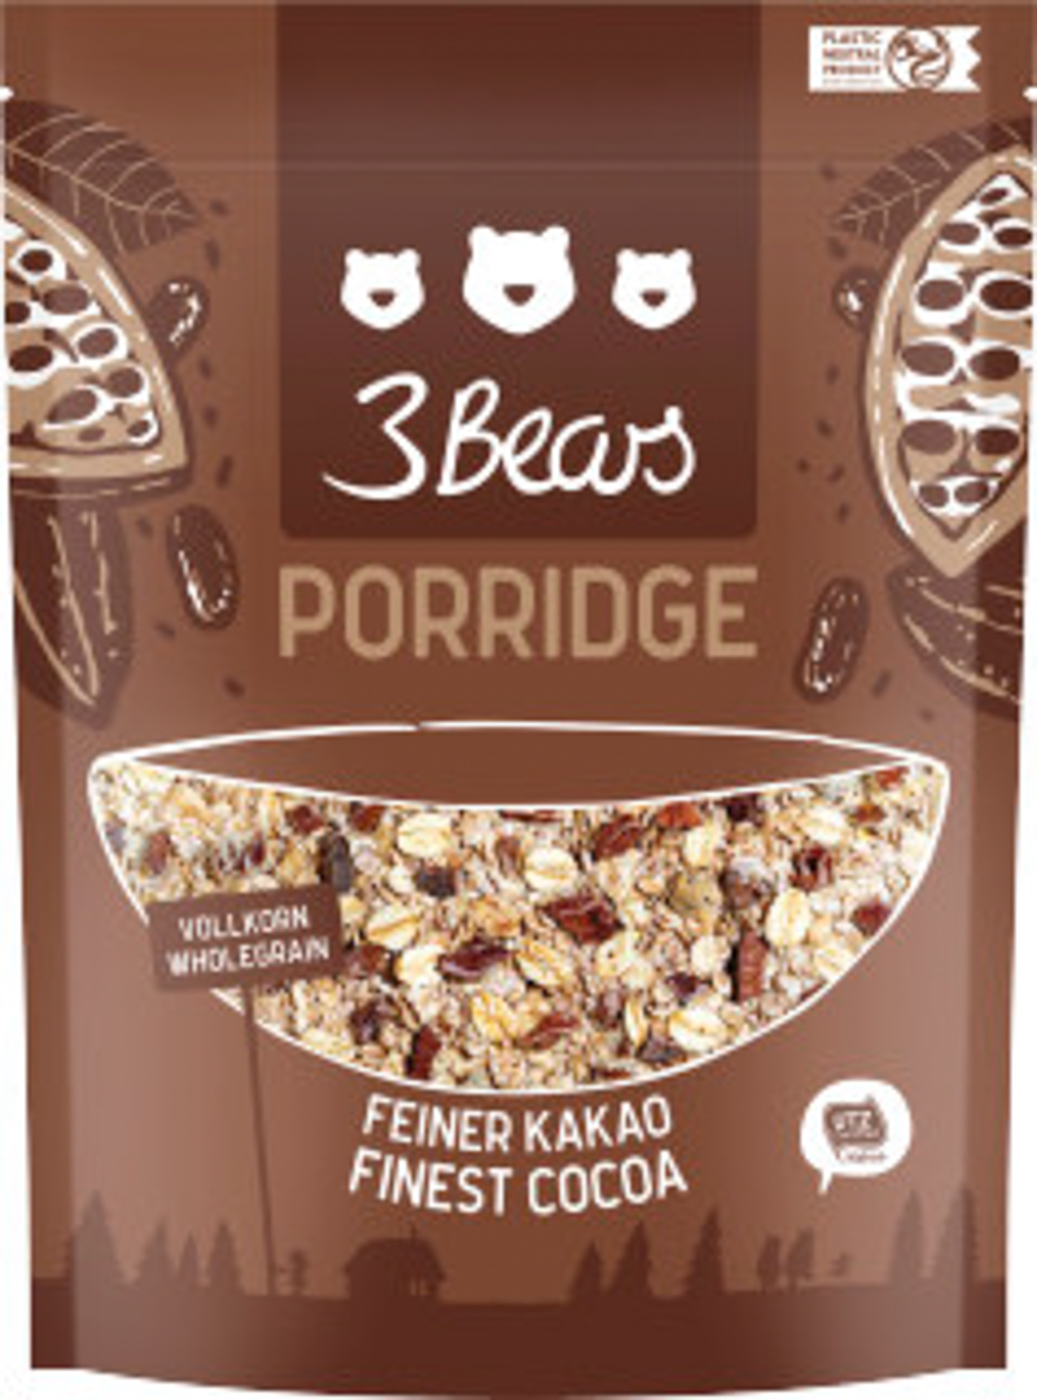 3Bears Feiner Kakao Porridge 400G